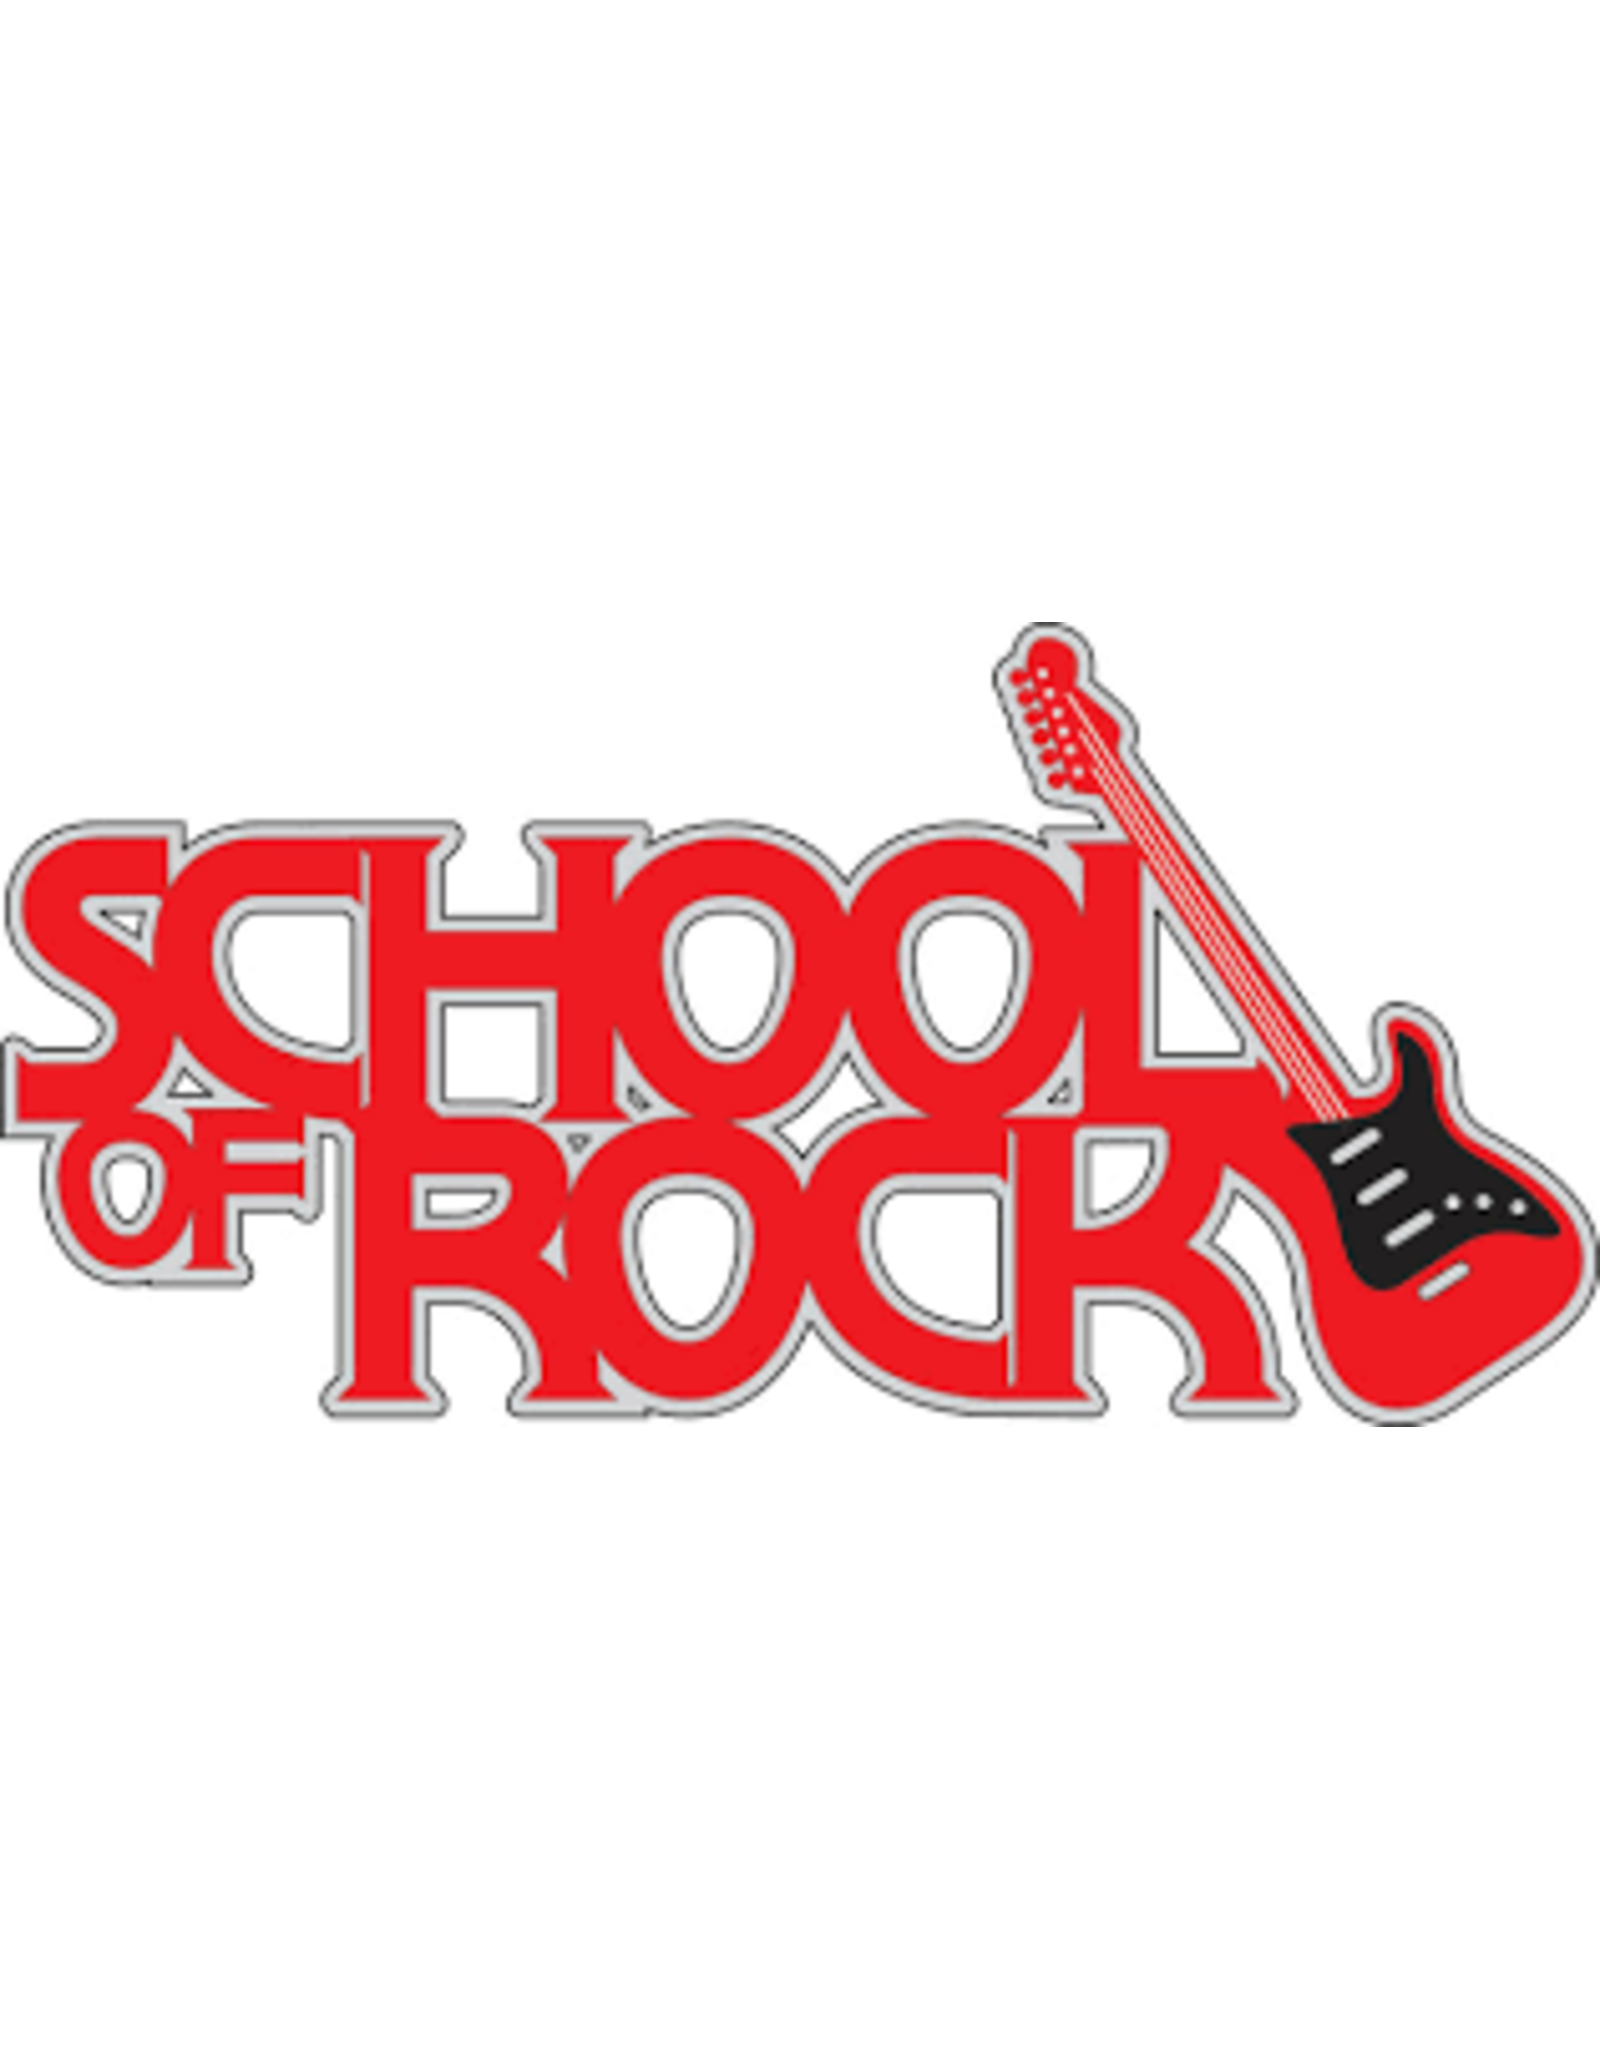 School Of Rock Banner